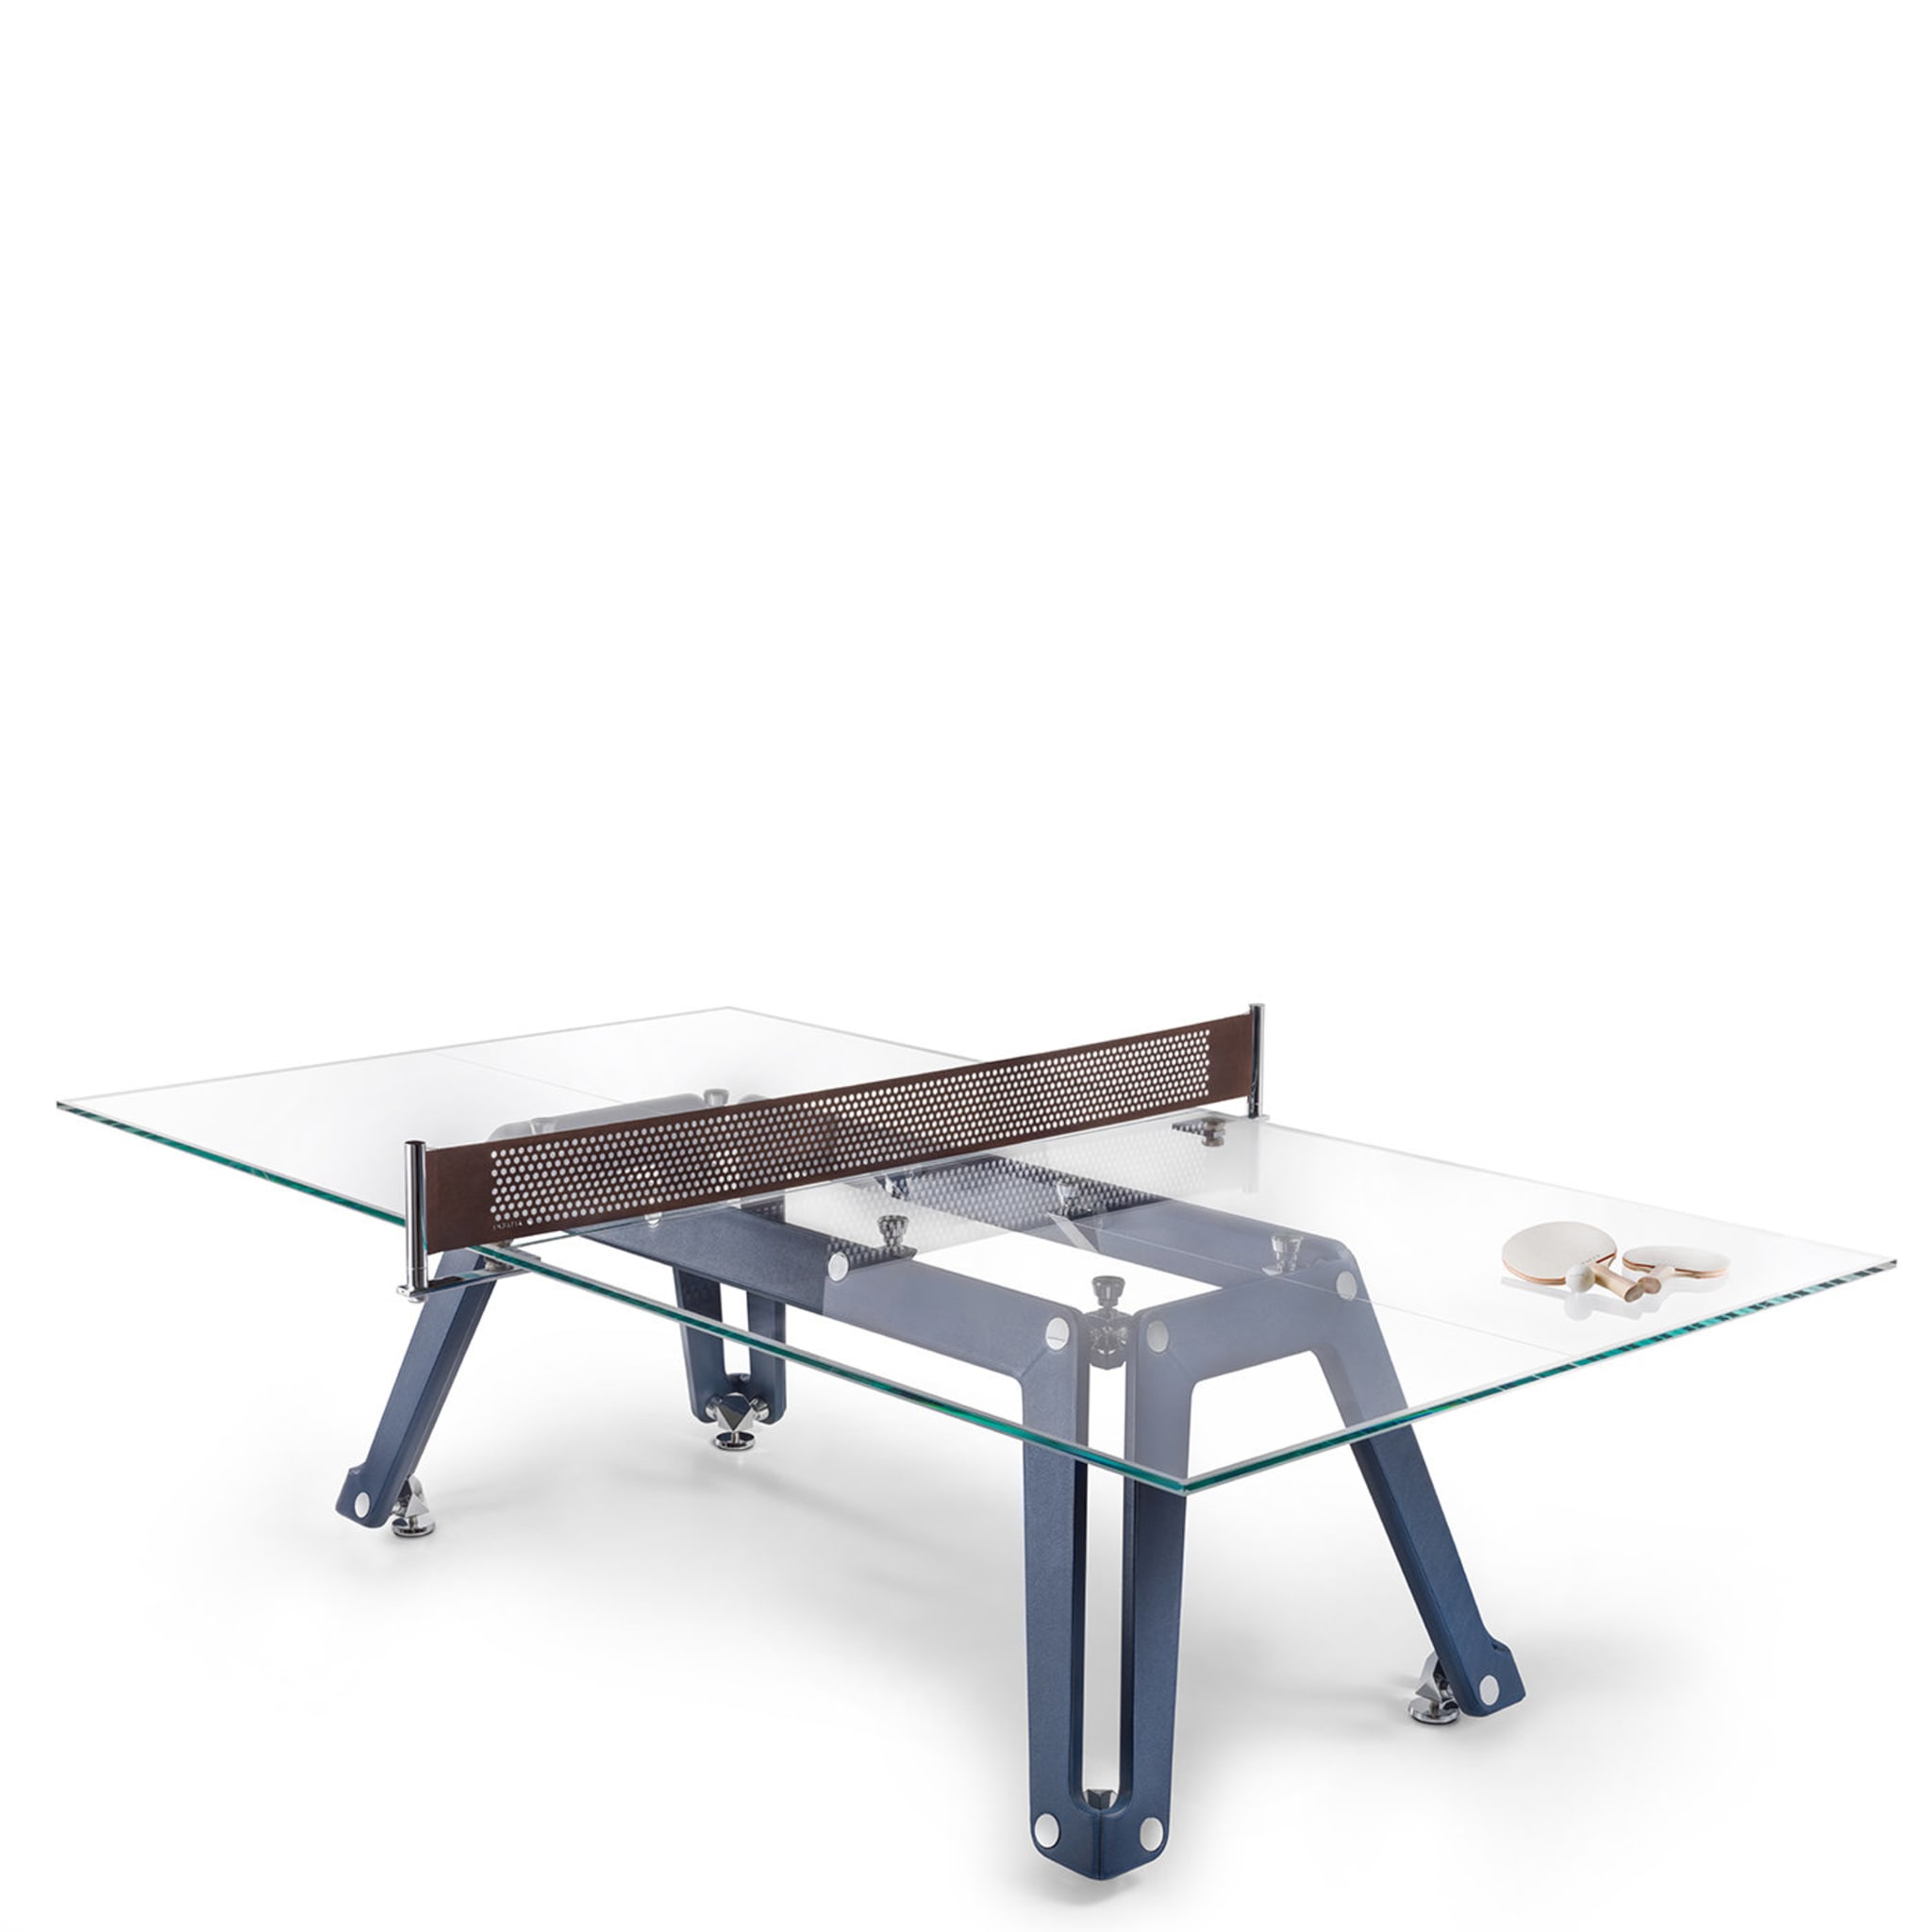 Table de tennis de table en verre Lungolinea par Adriano Design - Vue alternative 1